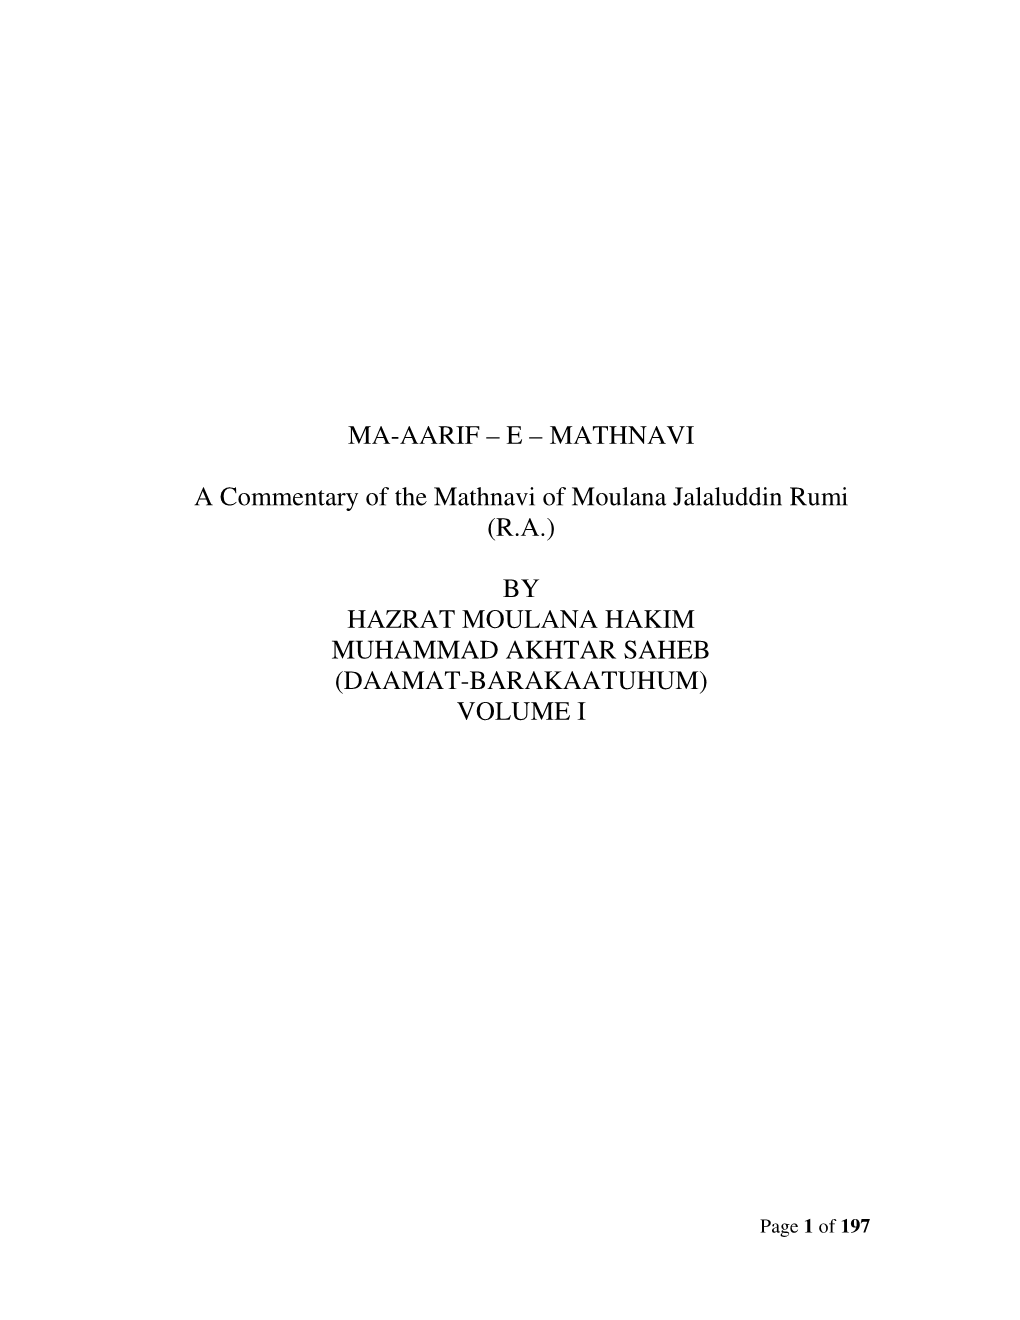 (Ra) by Hazrat Moulana Hakim Muhammad Akht